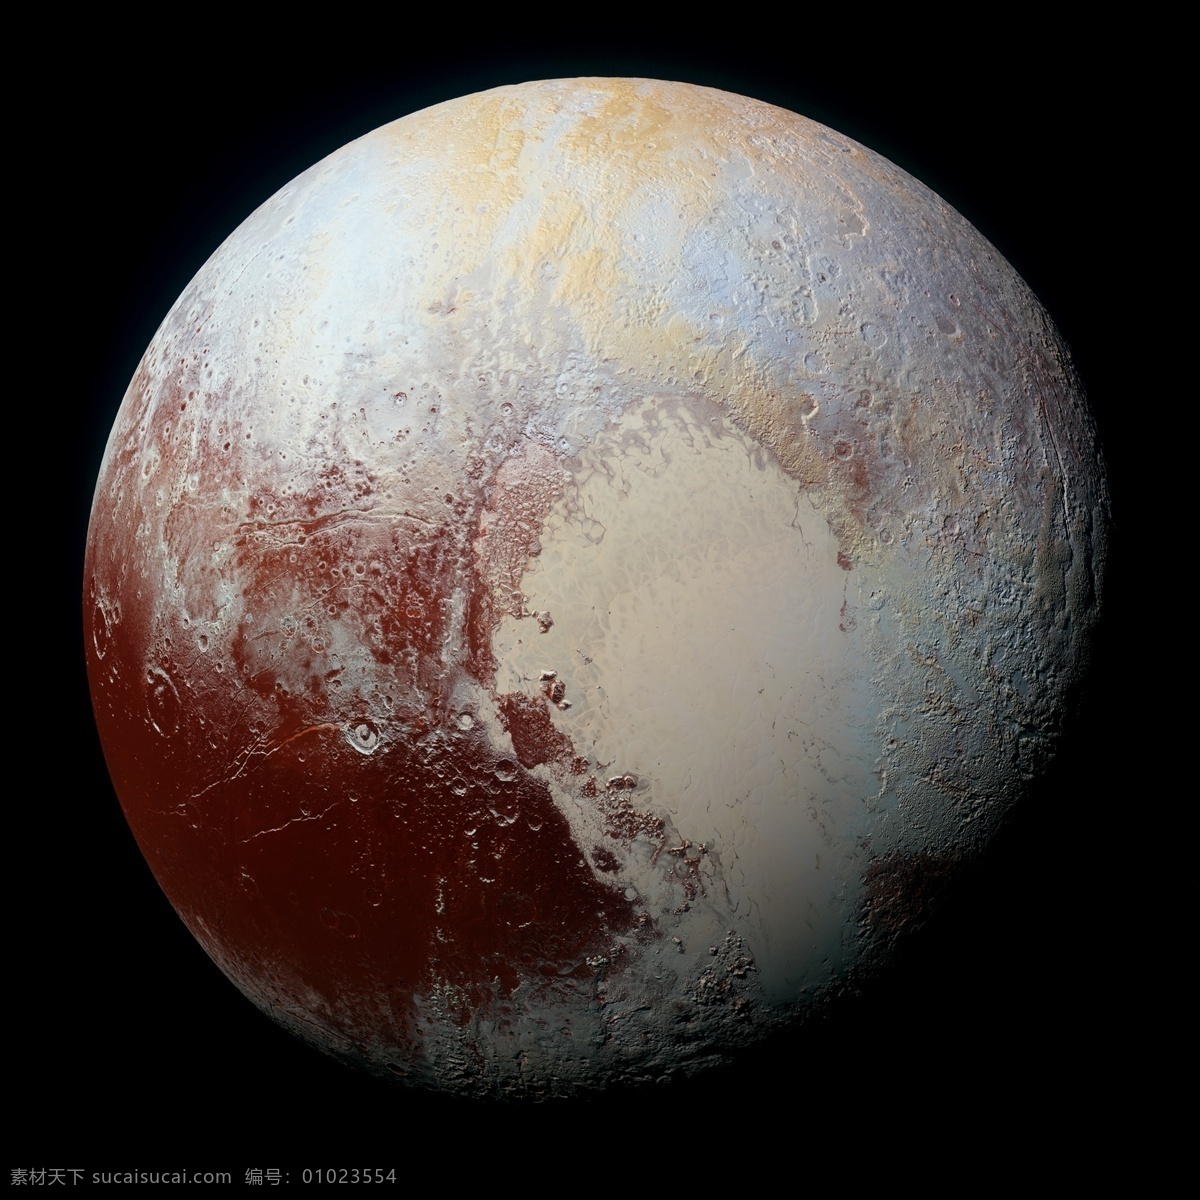 冥王星照片 冥王星 矮行星 冥王星图片 冥神星 冥王星大图 天文系列高清 自然景观